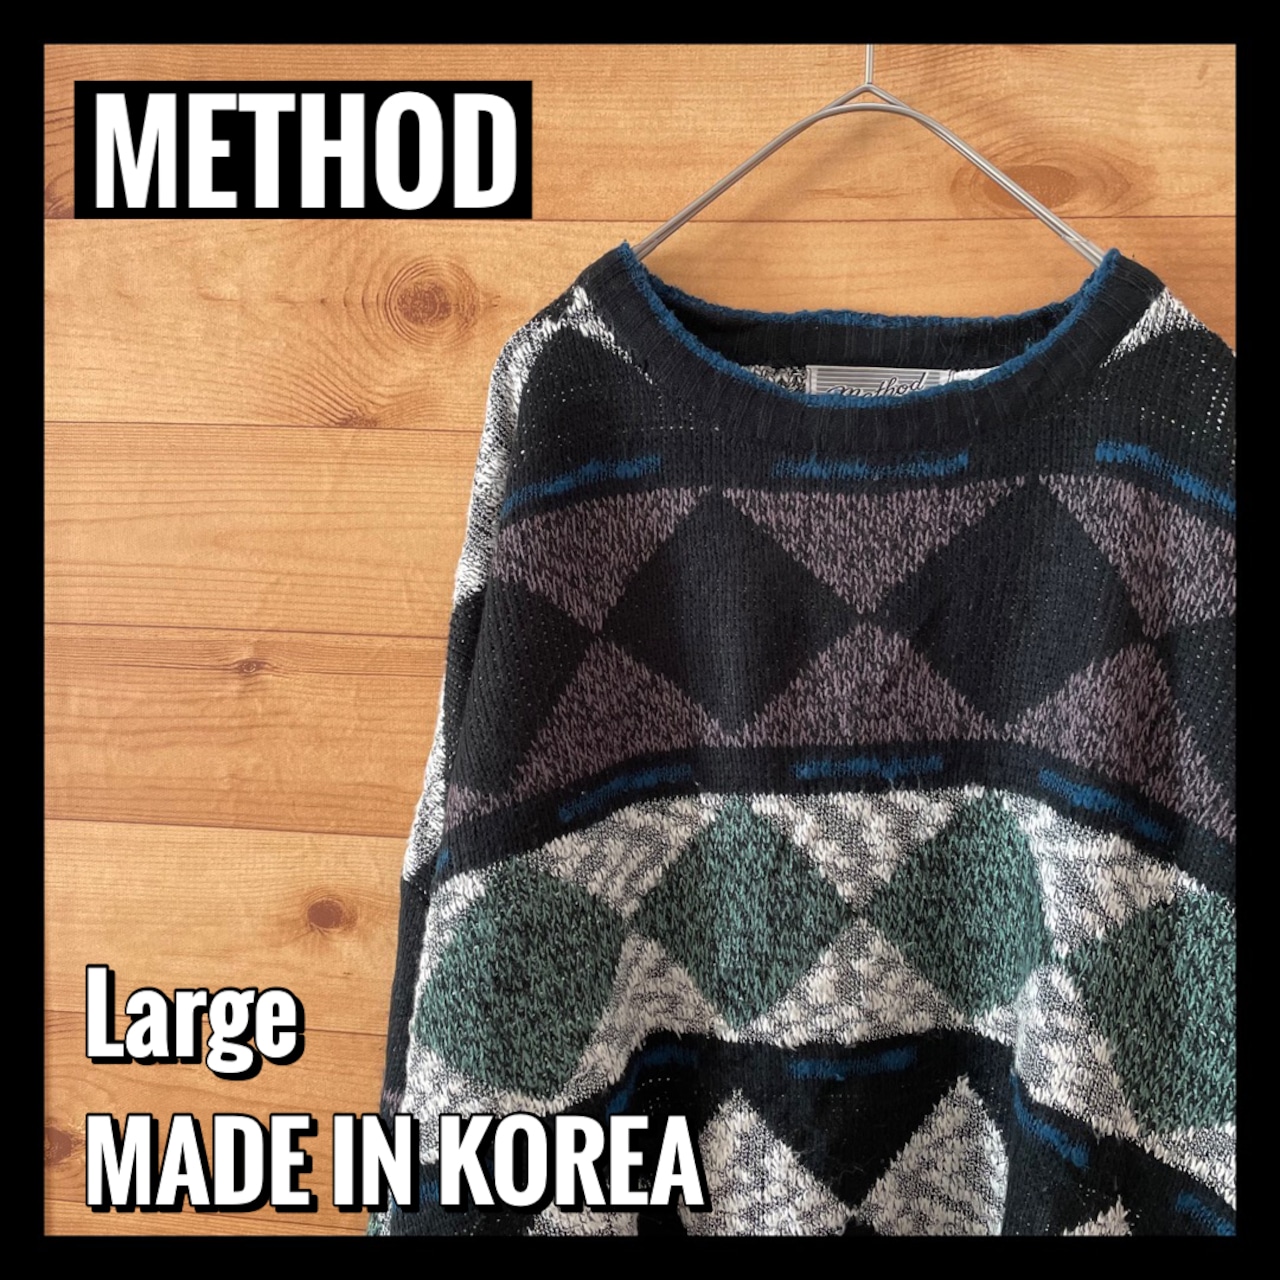 【METHOD】クルーネック 柄ニット セーター 総柄 L 韓国製 アメリカ古着